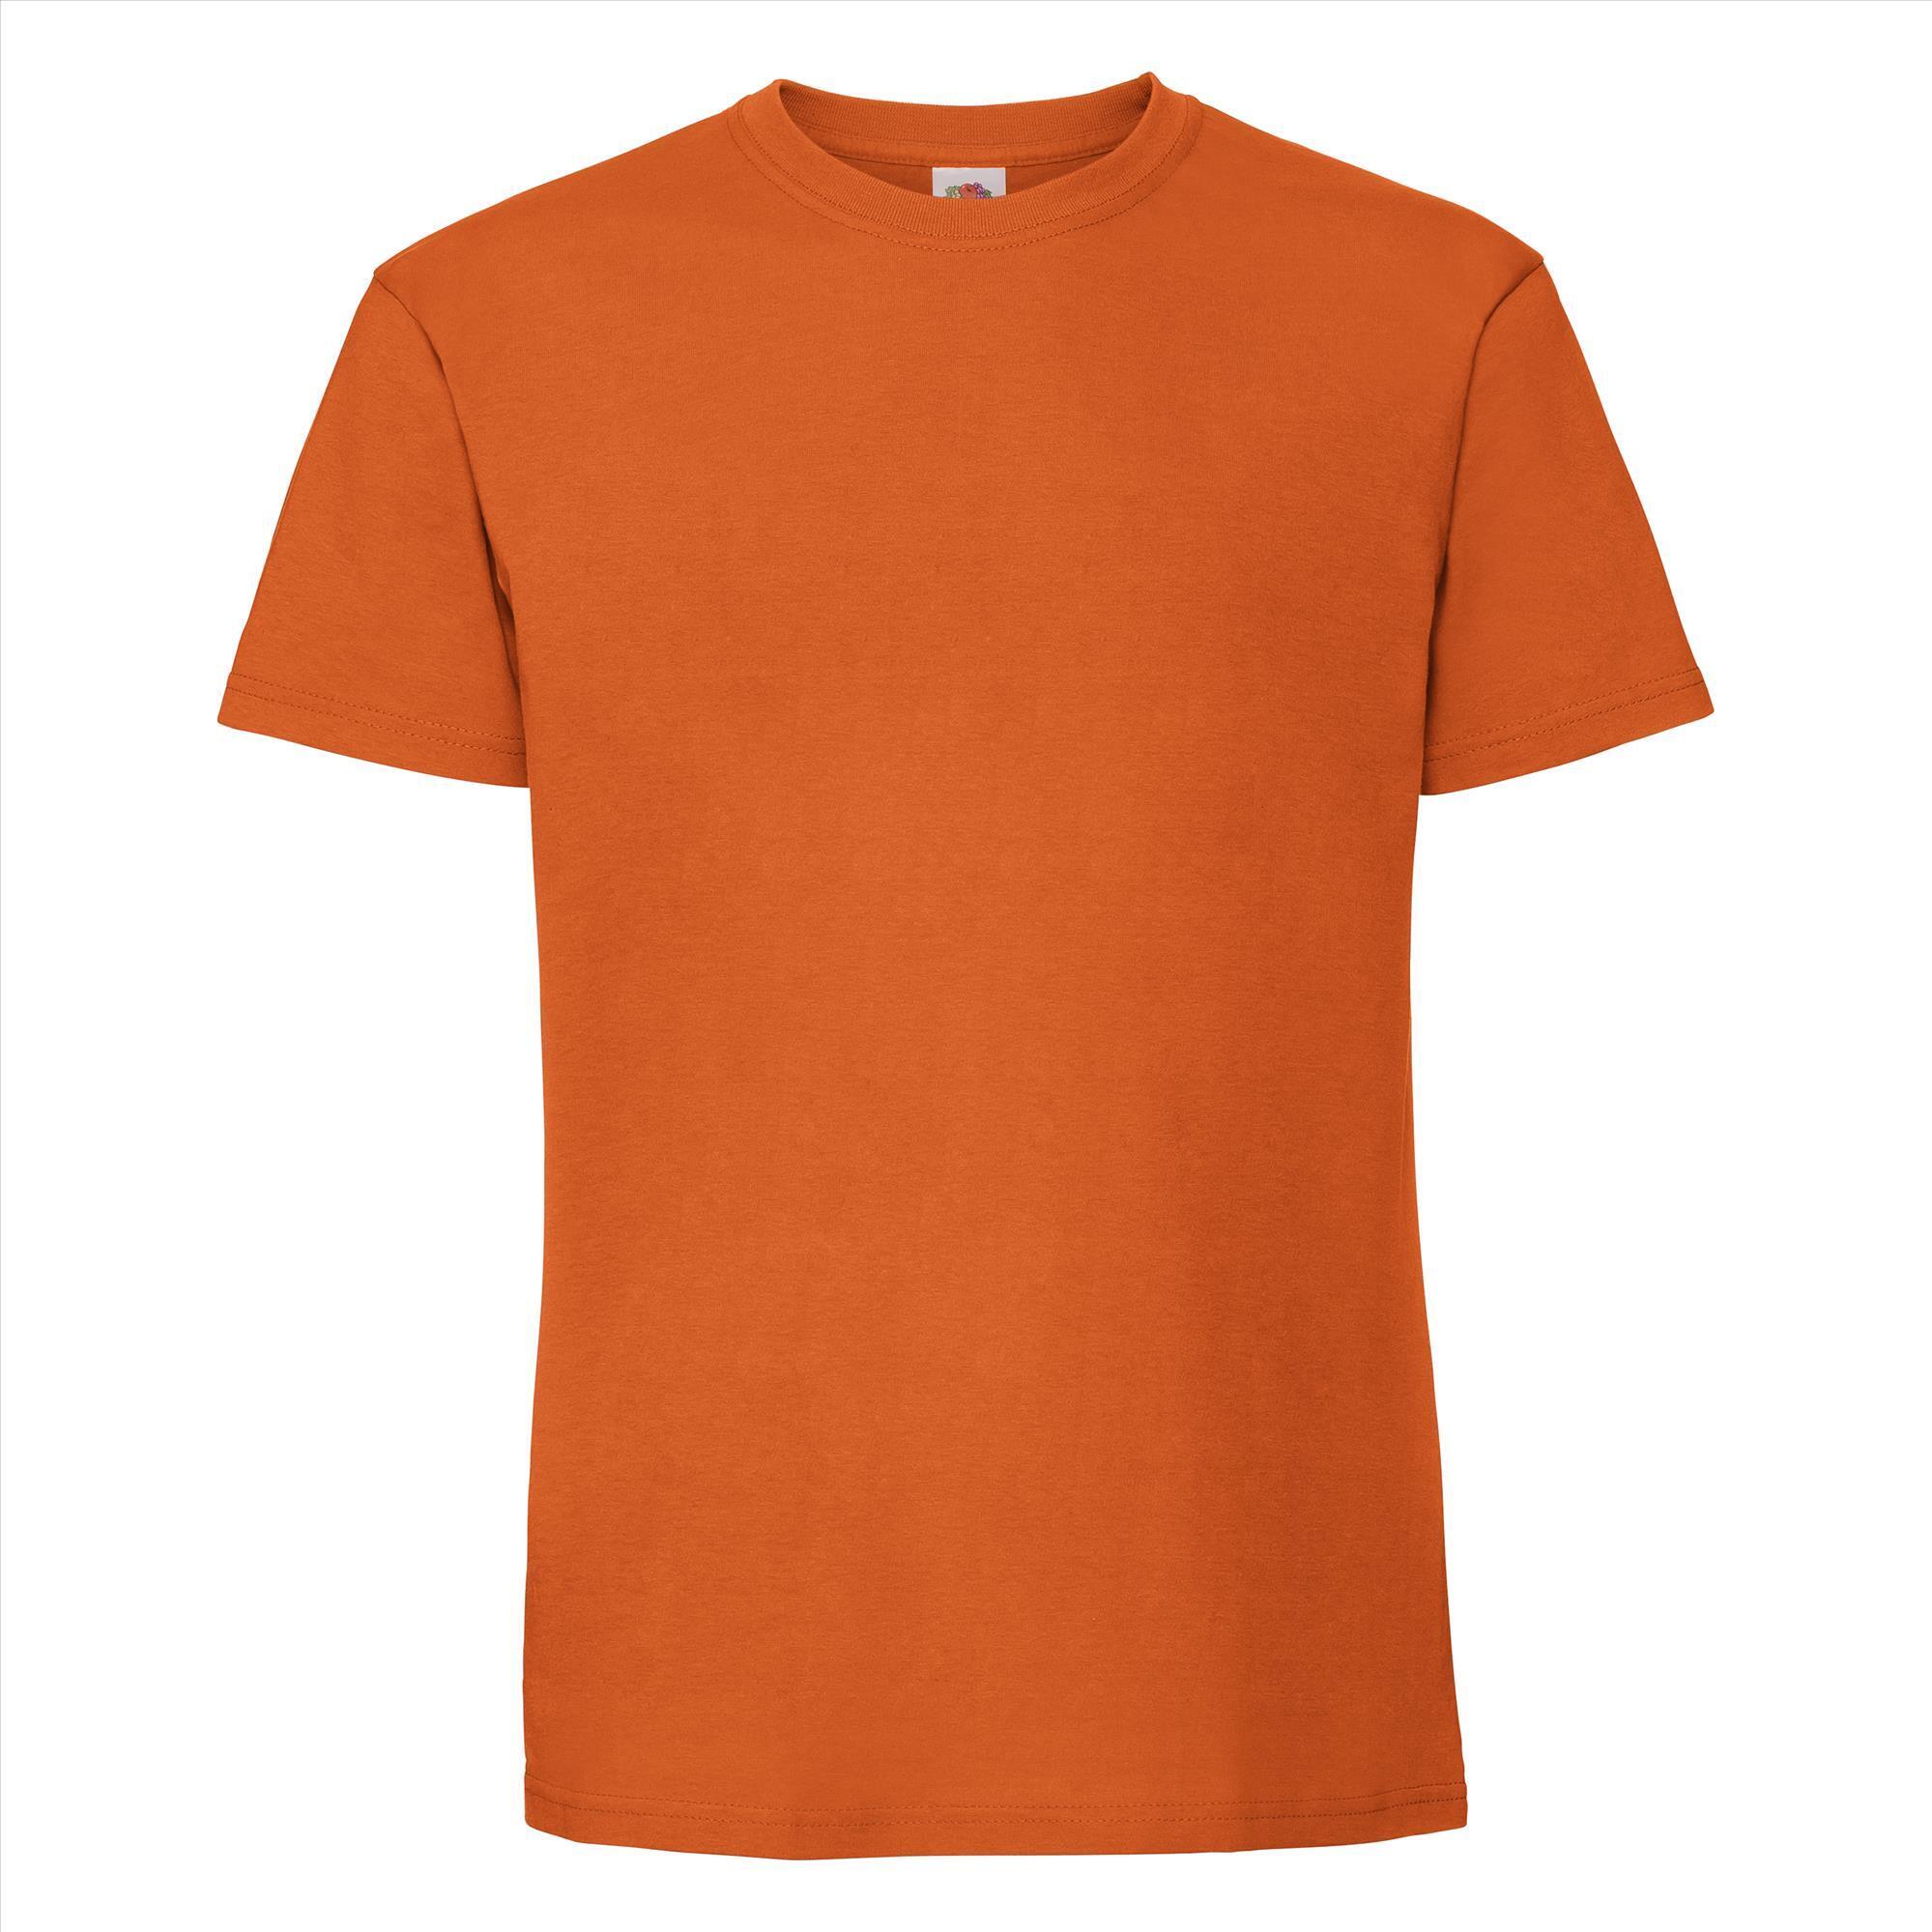 T-shirt oranje korte mouwen voor mannen bedrukbaar te personaliseren